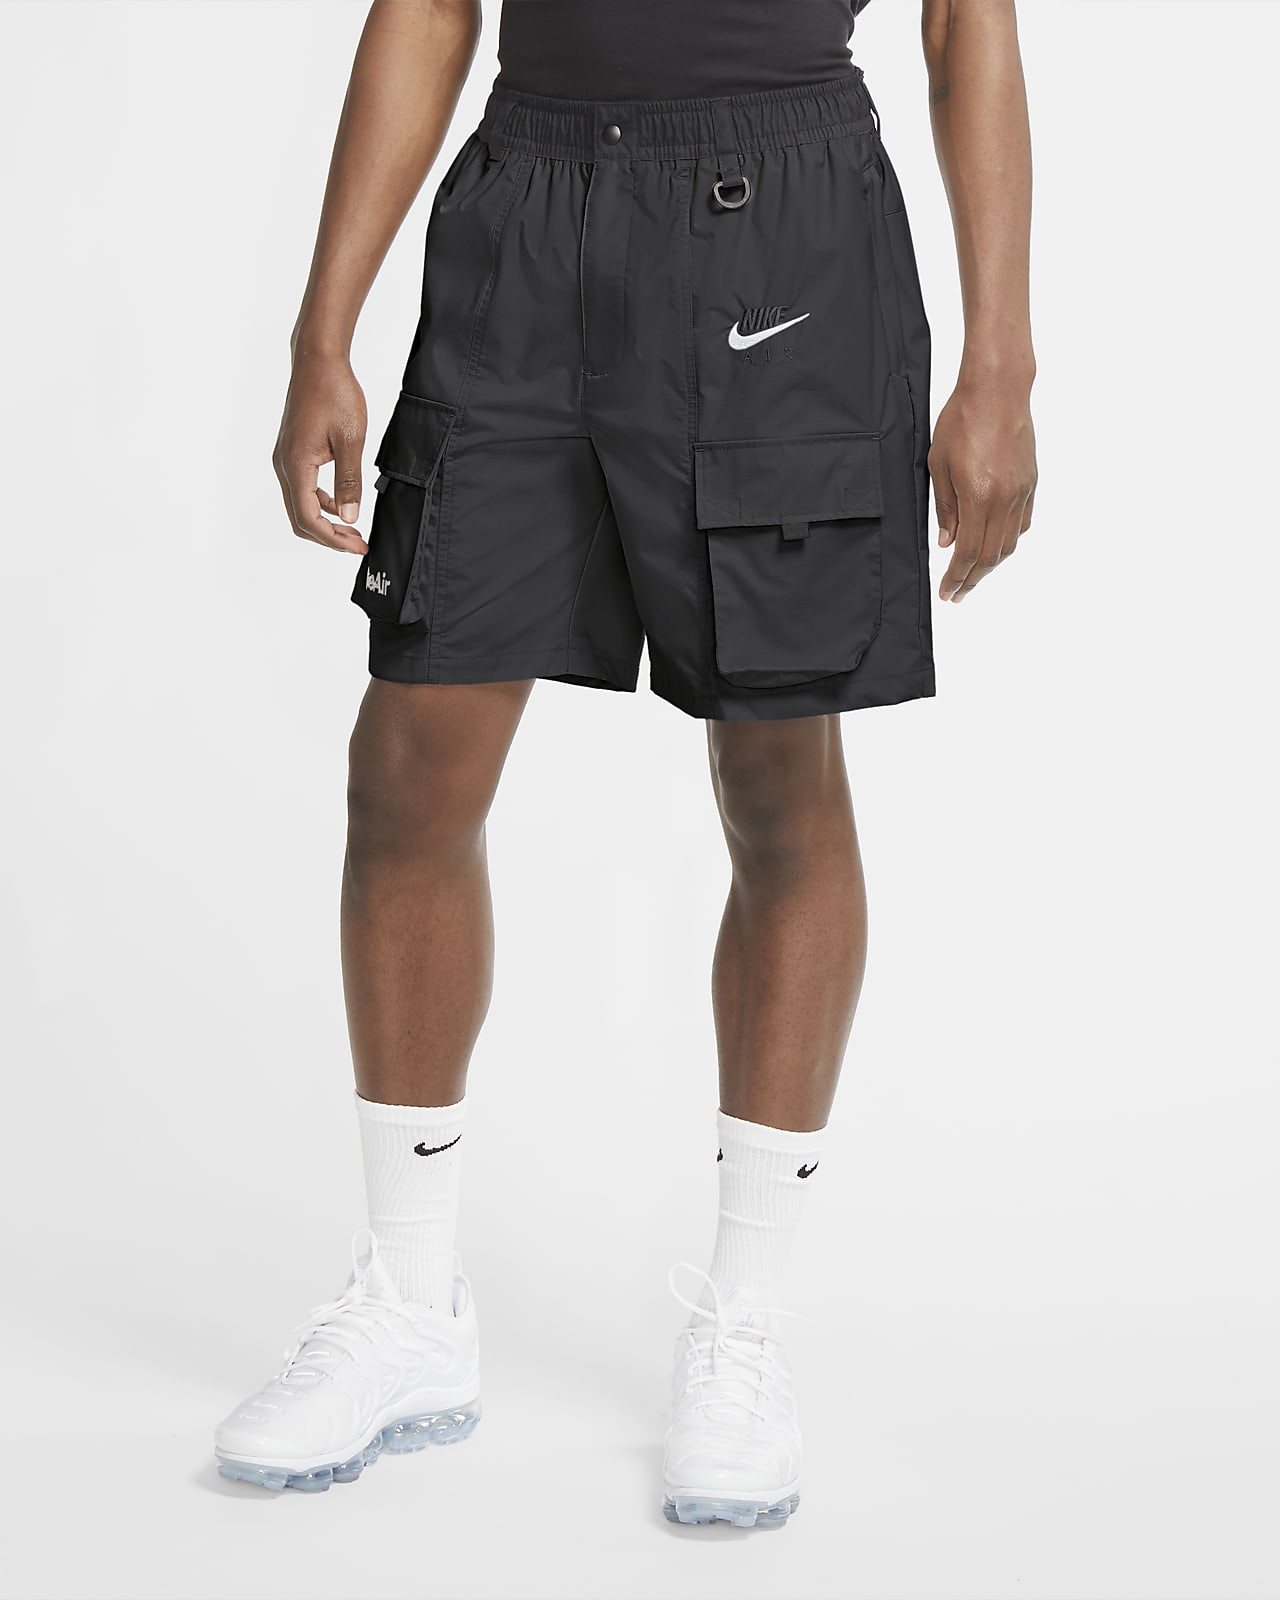 Shorts para hombre Nike Air. Nike.com